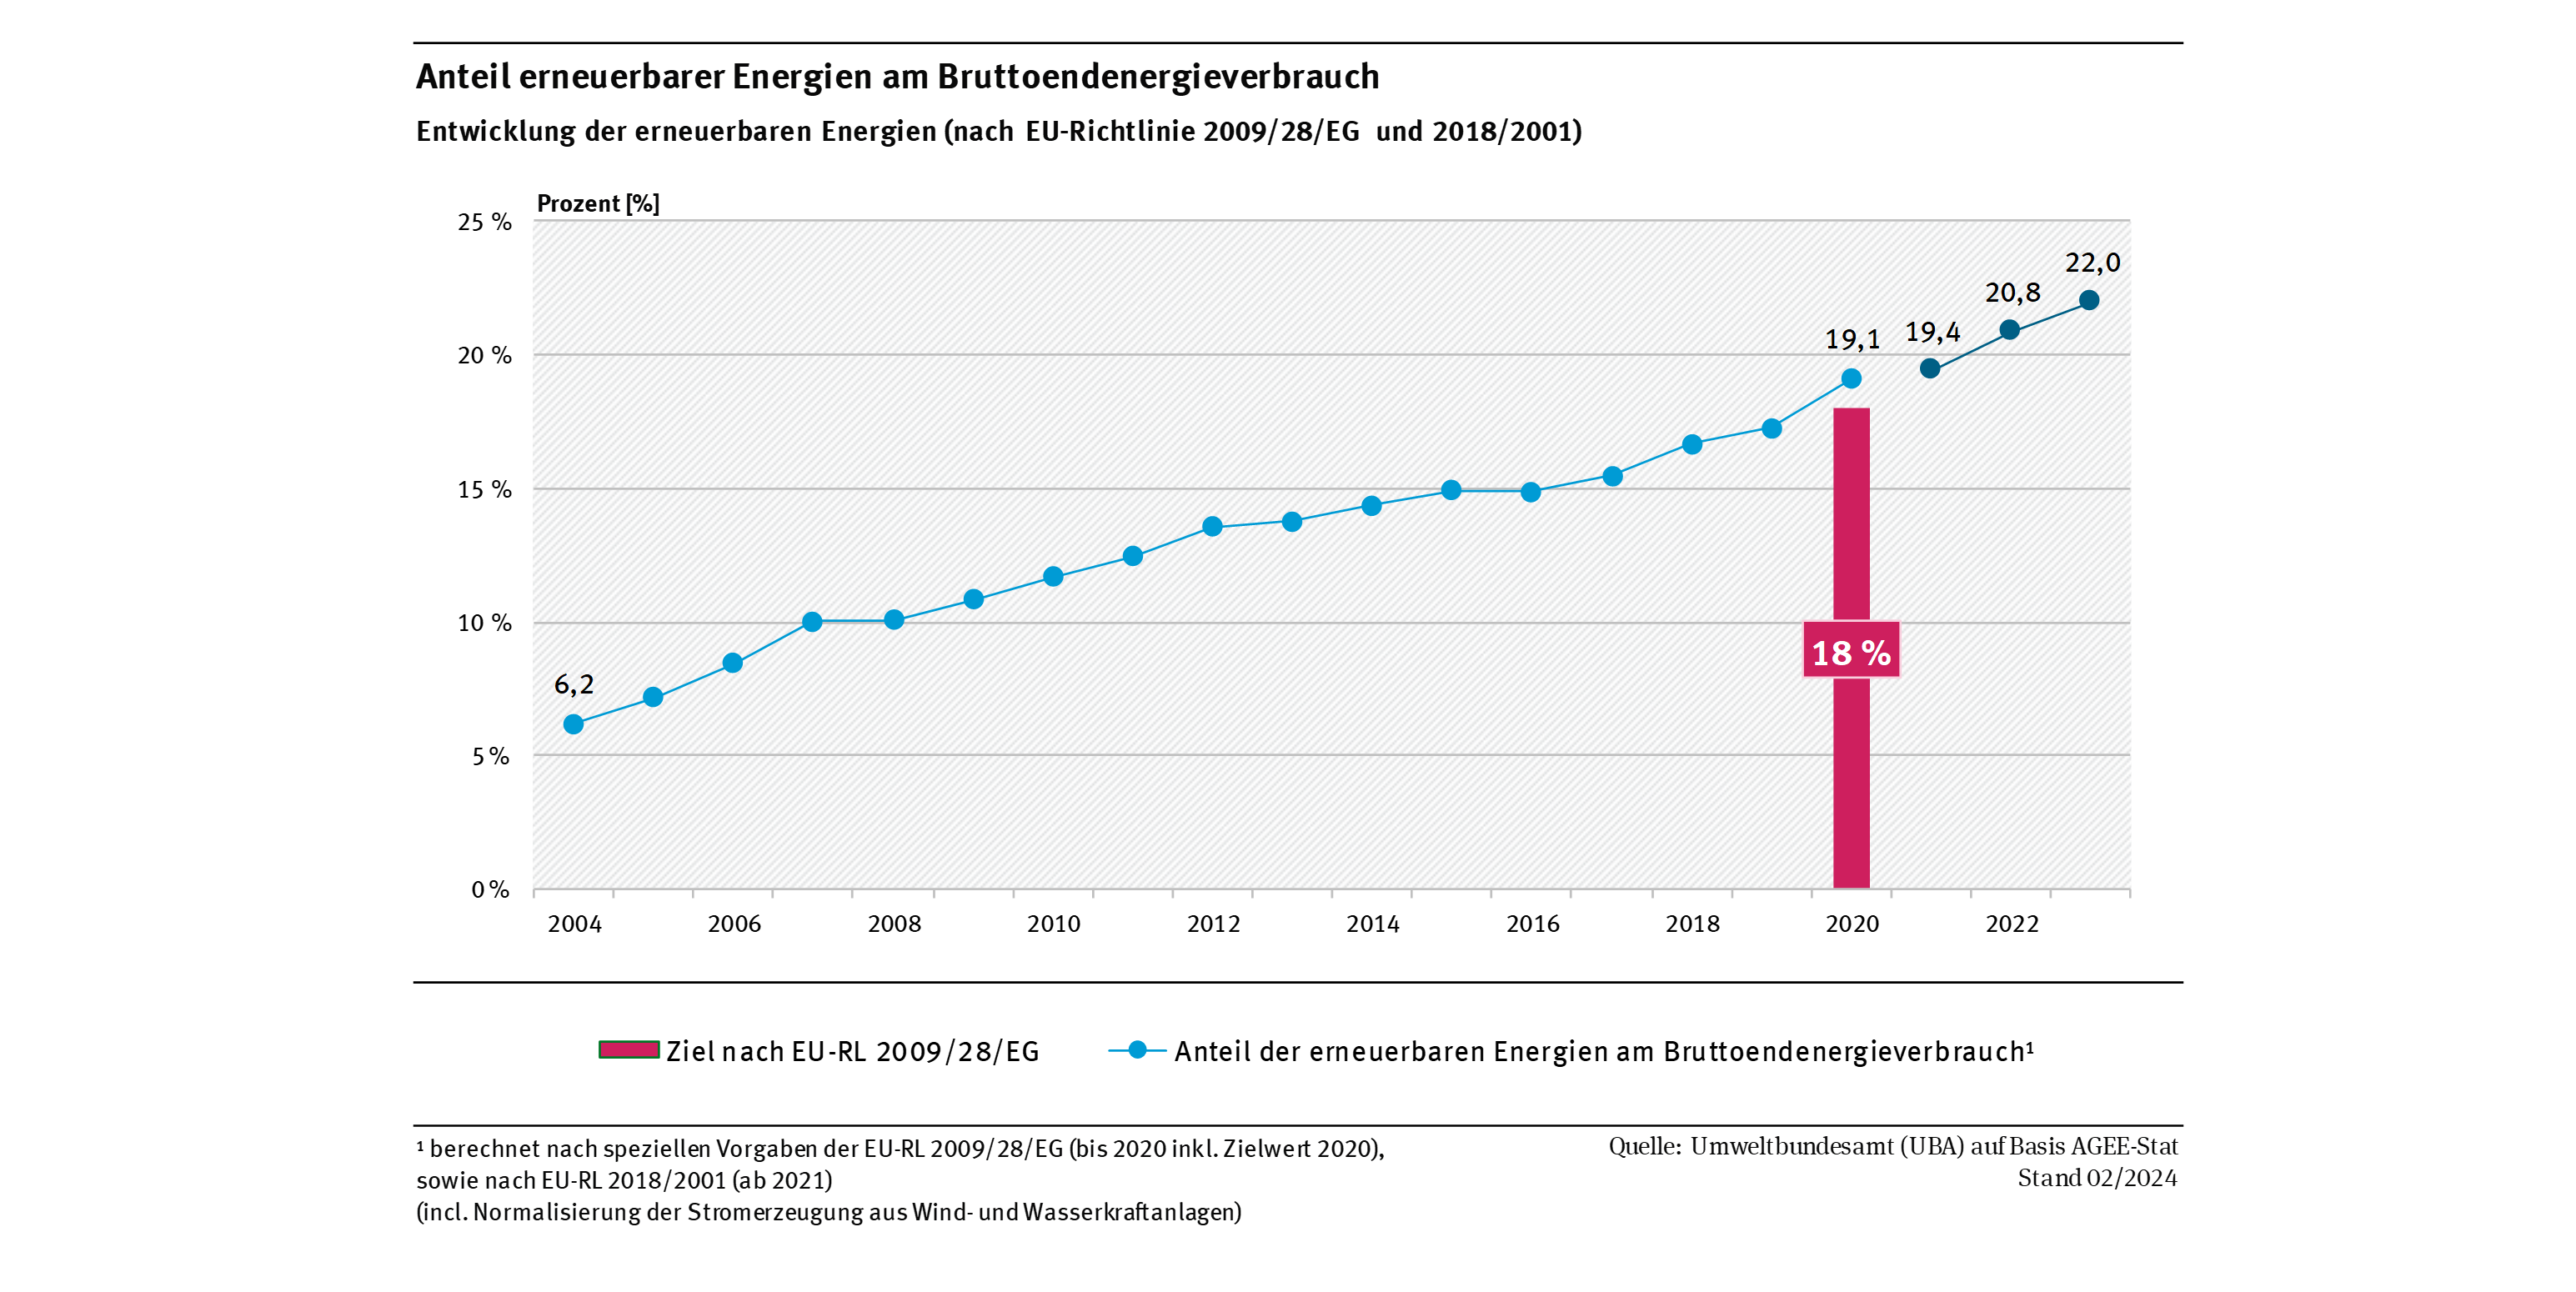 Anteil erneuerbarer Energien am Brutto-Endenergieverbrauch (berechnet nach EU-Richtlinie) stieg kontinuierlich an und liegt im Jahr 2023 bei 22,0 Prozent.